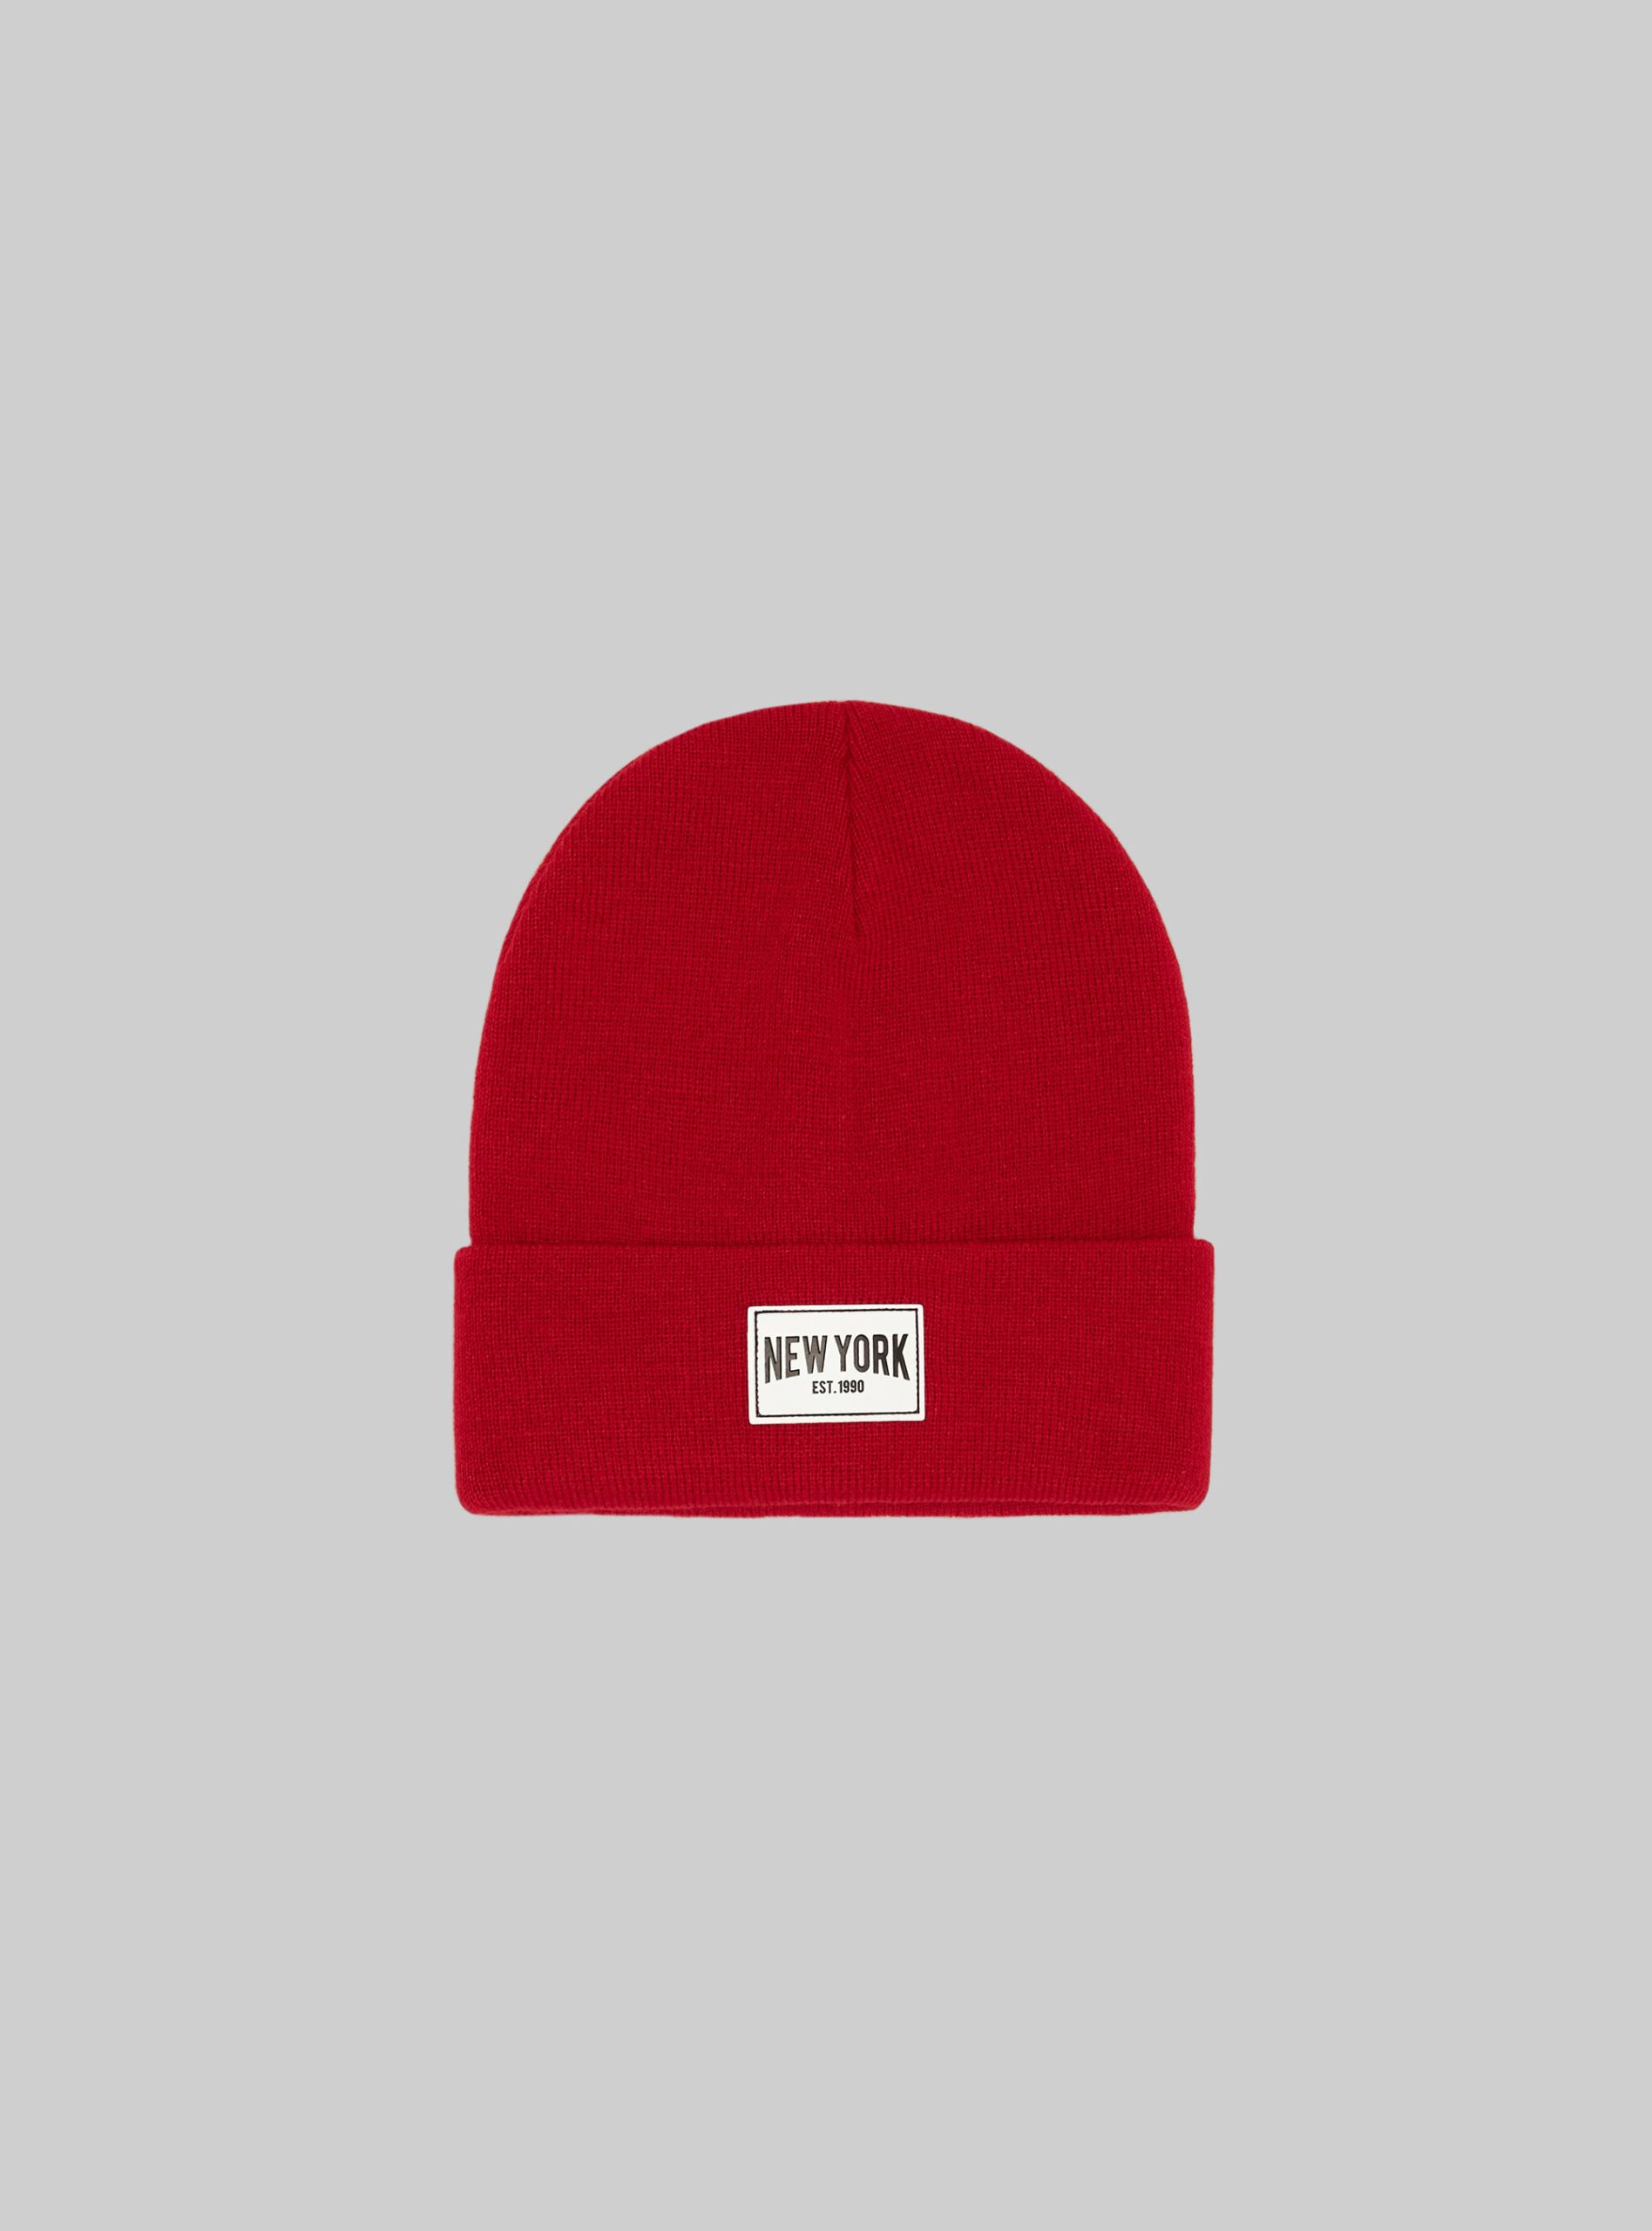 Männer Angebot Rd2 Red Medium Alcott Hat With Patch Hüte – 1